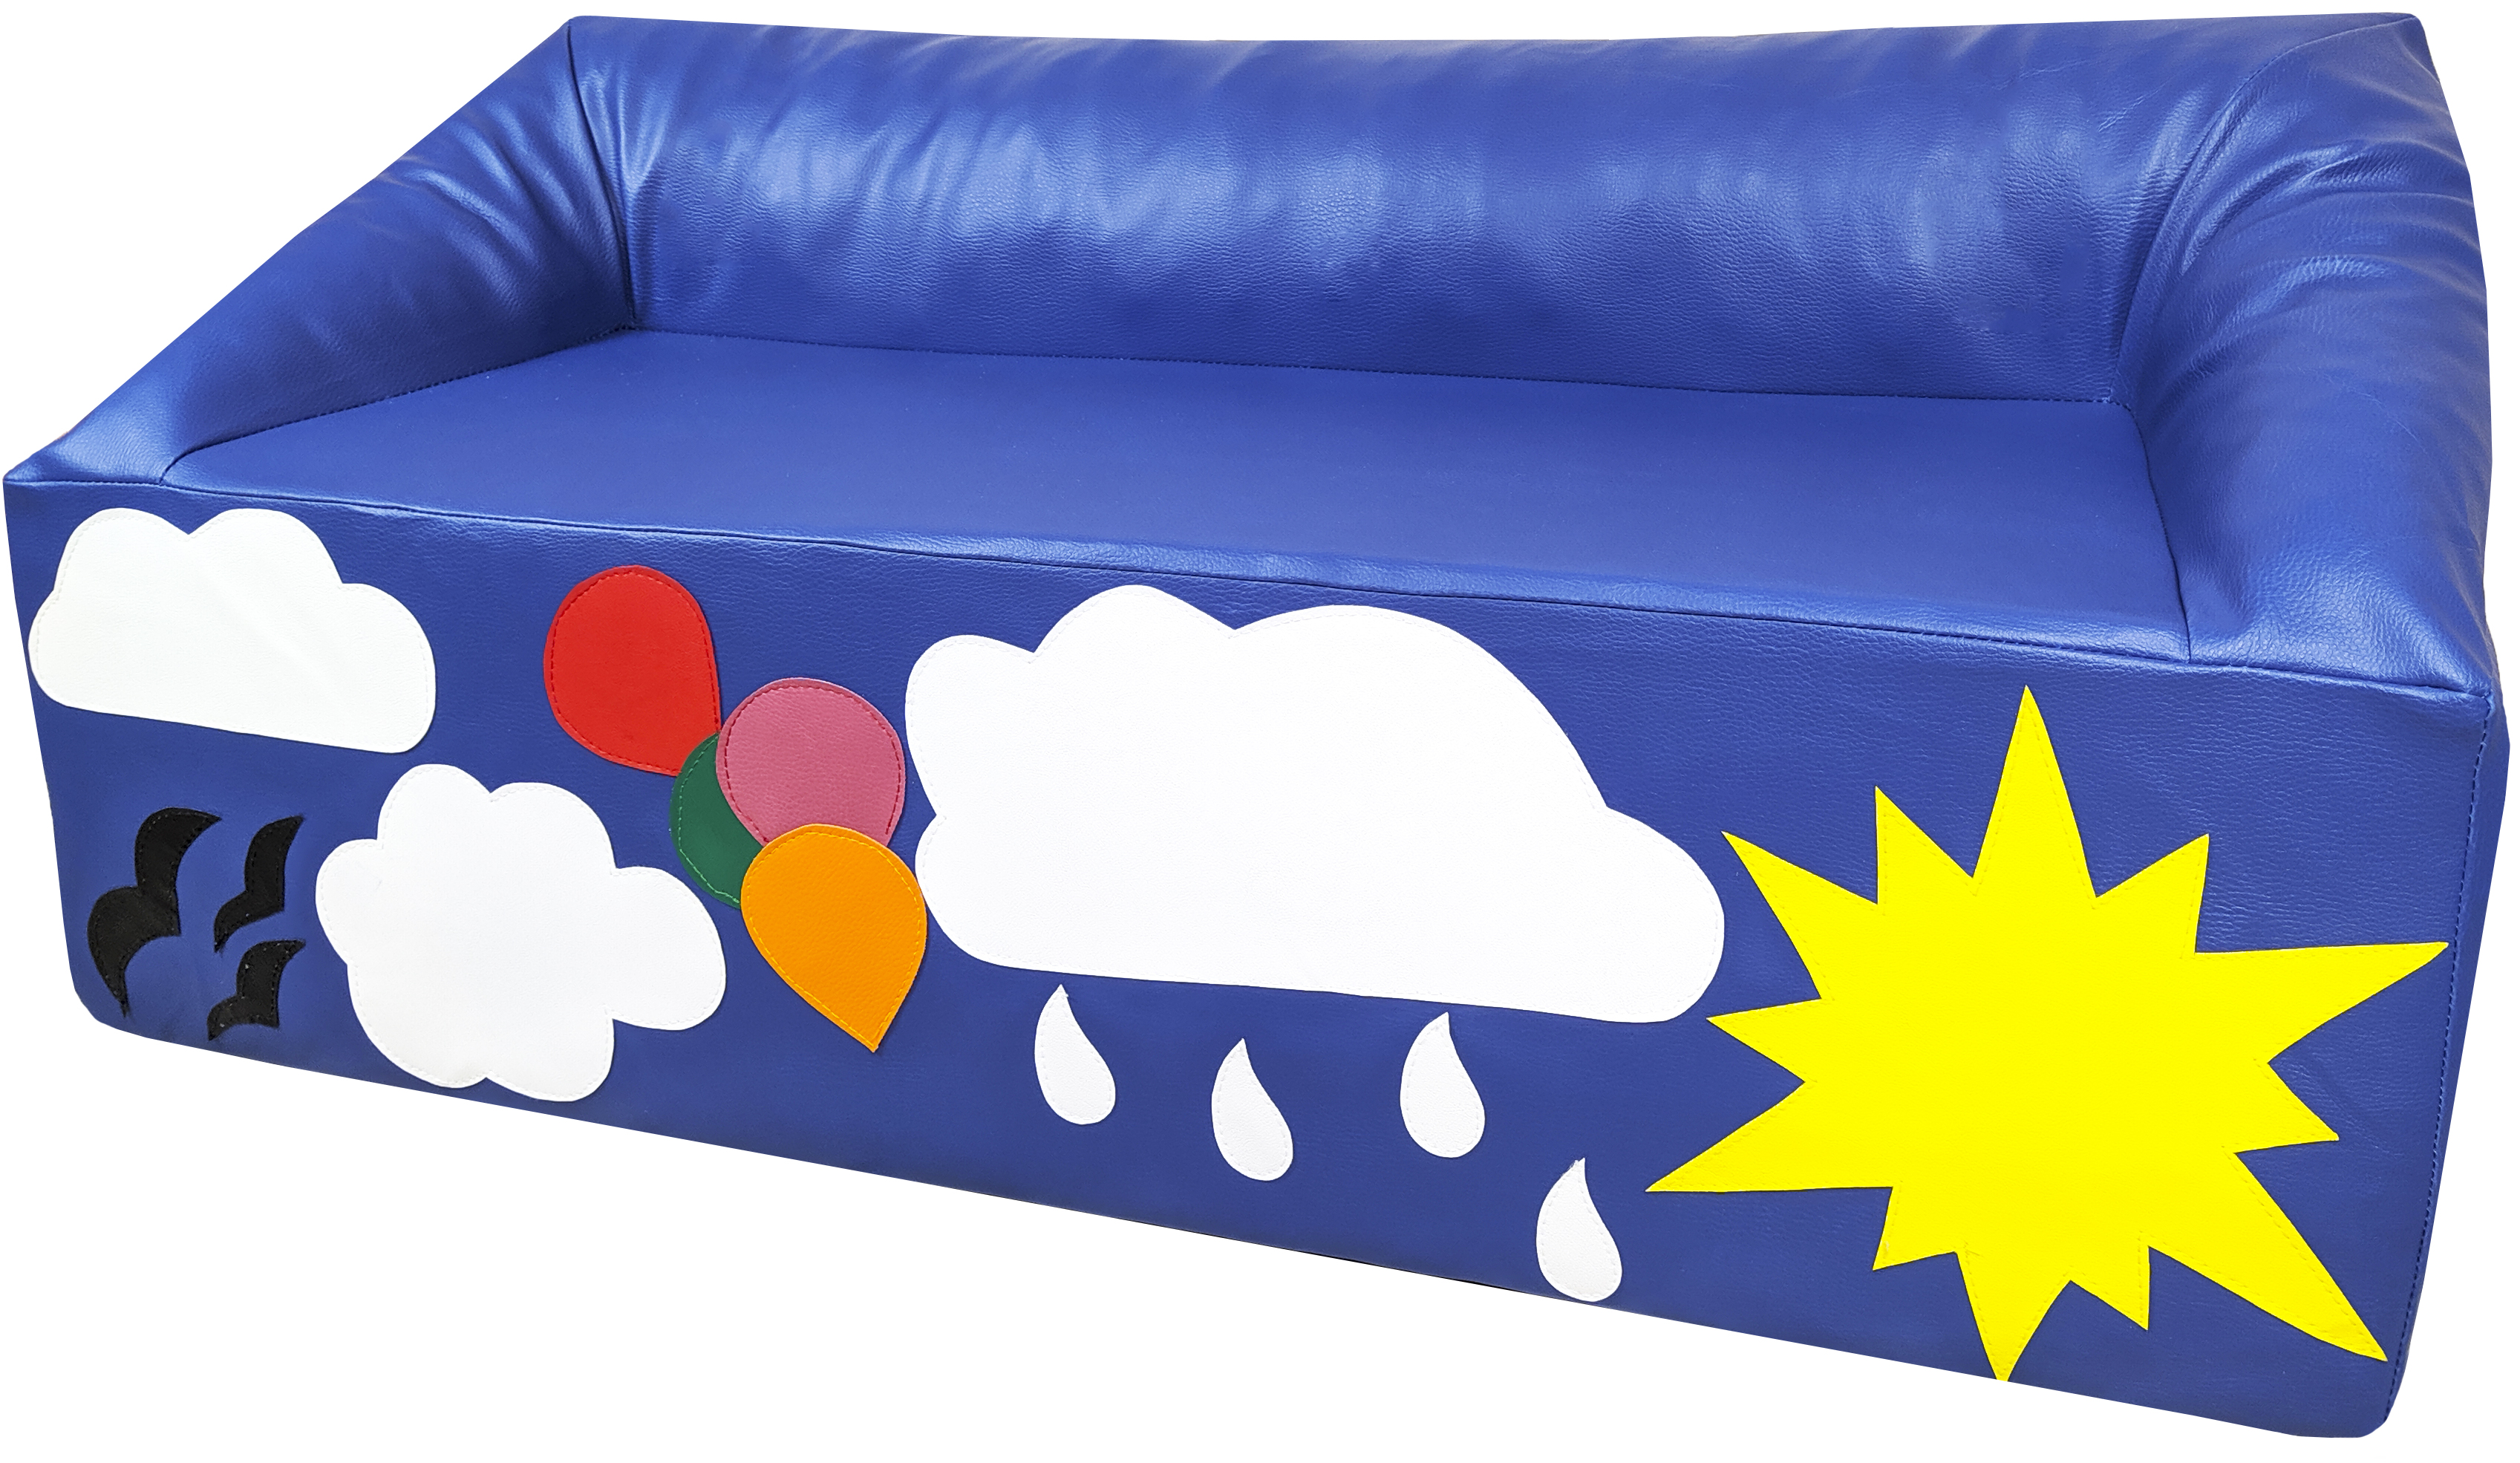 Дитячий диван Tia-Sport Хмара 110х65х50 см (sm-0307)